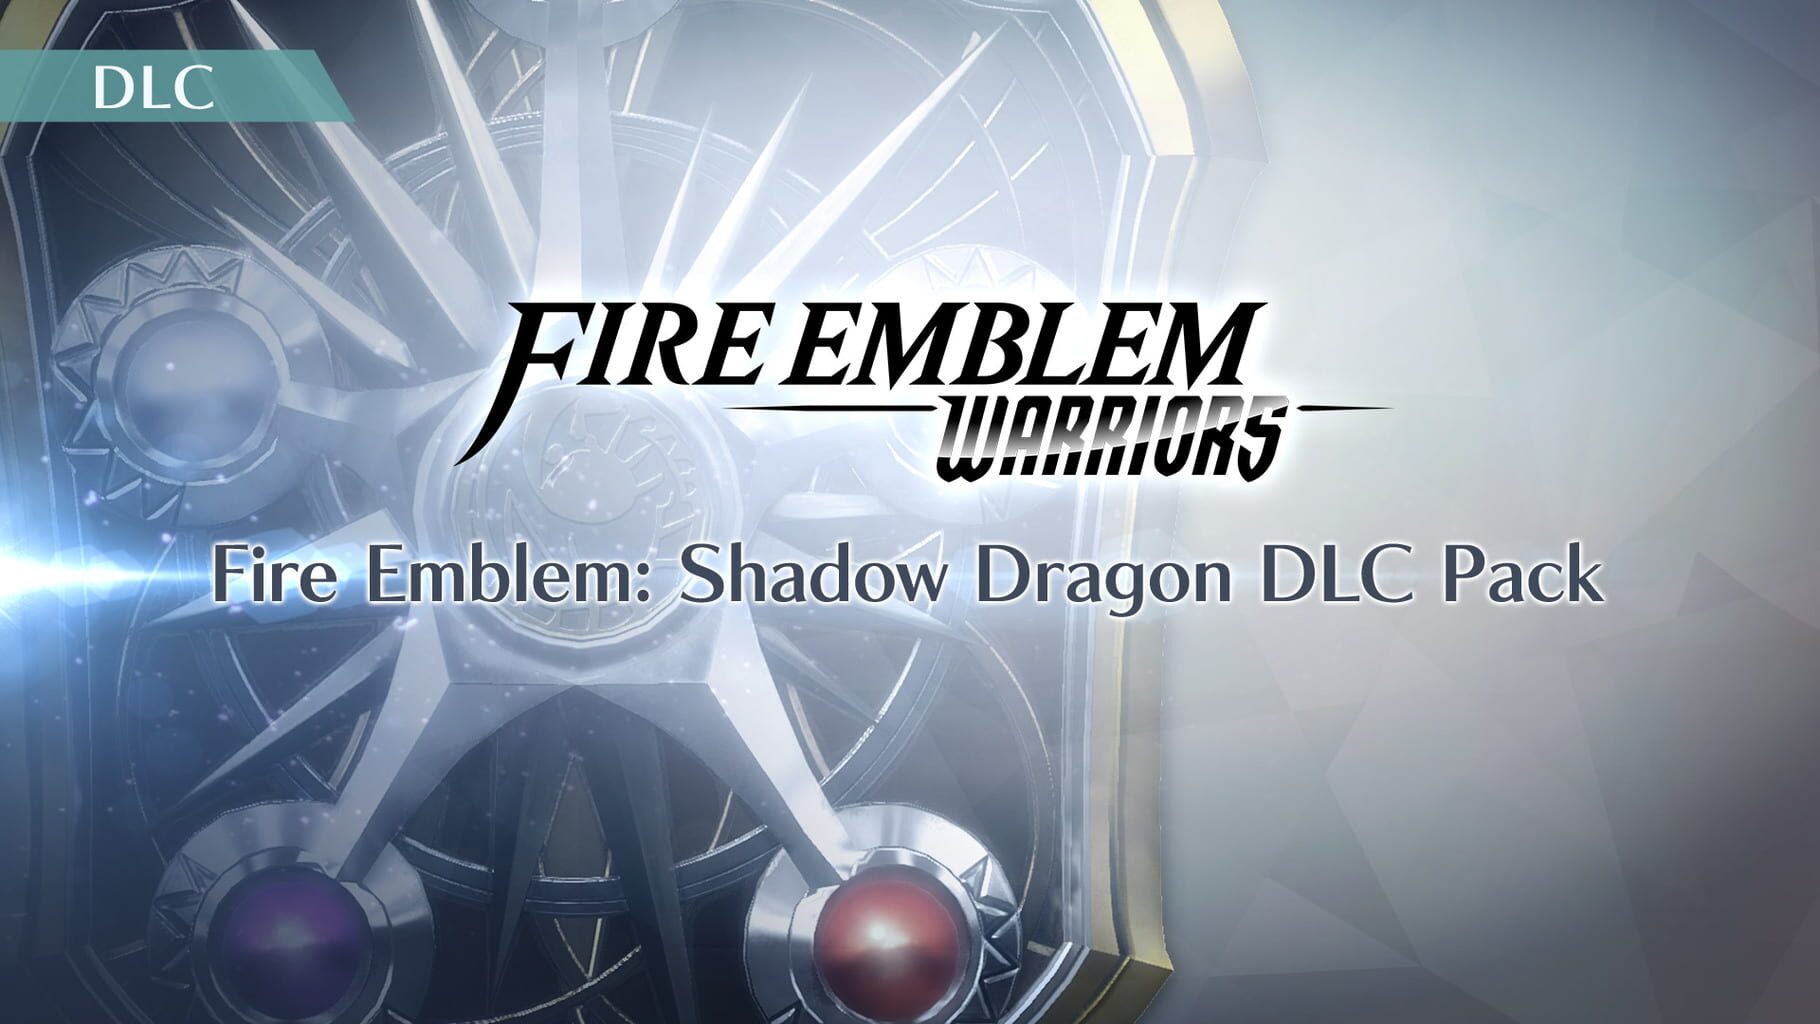 Fire Emblem Warriors: Fire Emblem - Shadow Dragon DLC Pack artwork